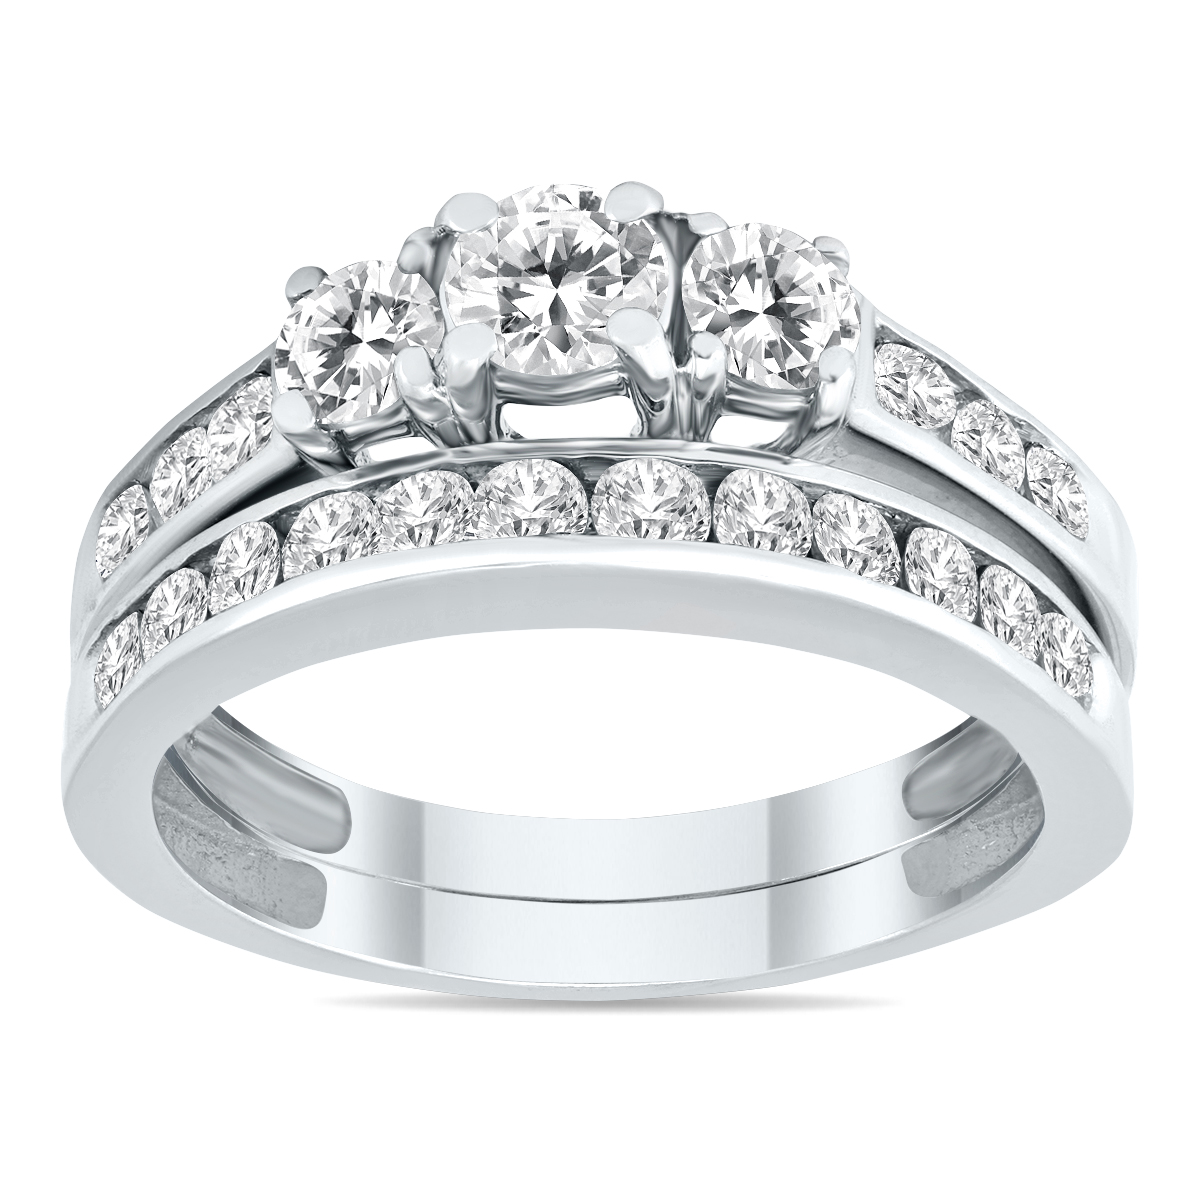 1 1/2 Carat TW Three Stone Diamond Bridal Set in 10K White Gold